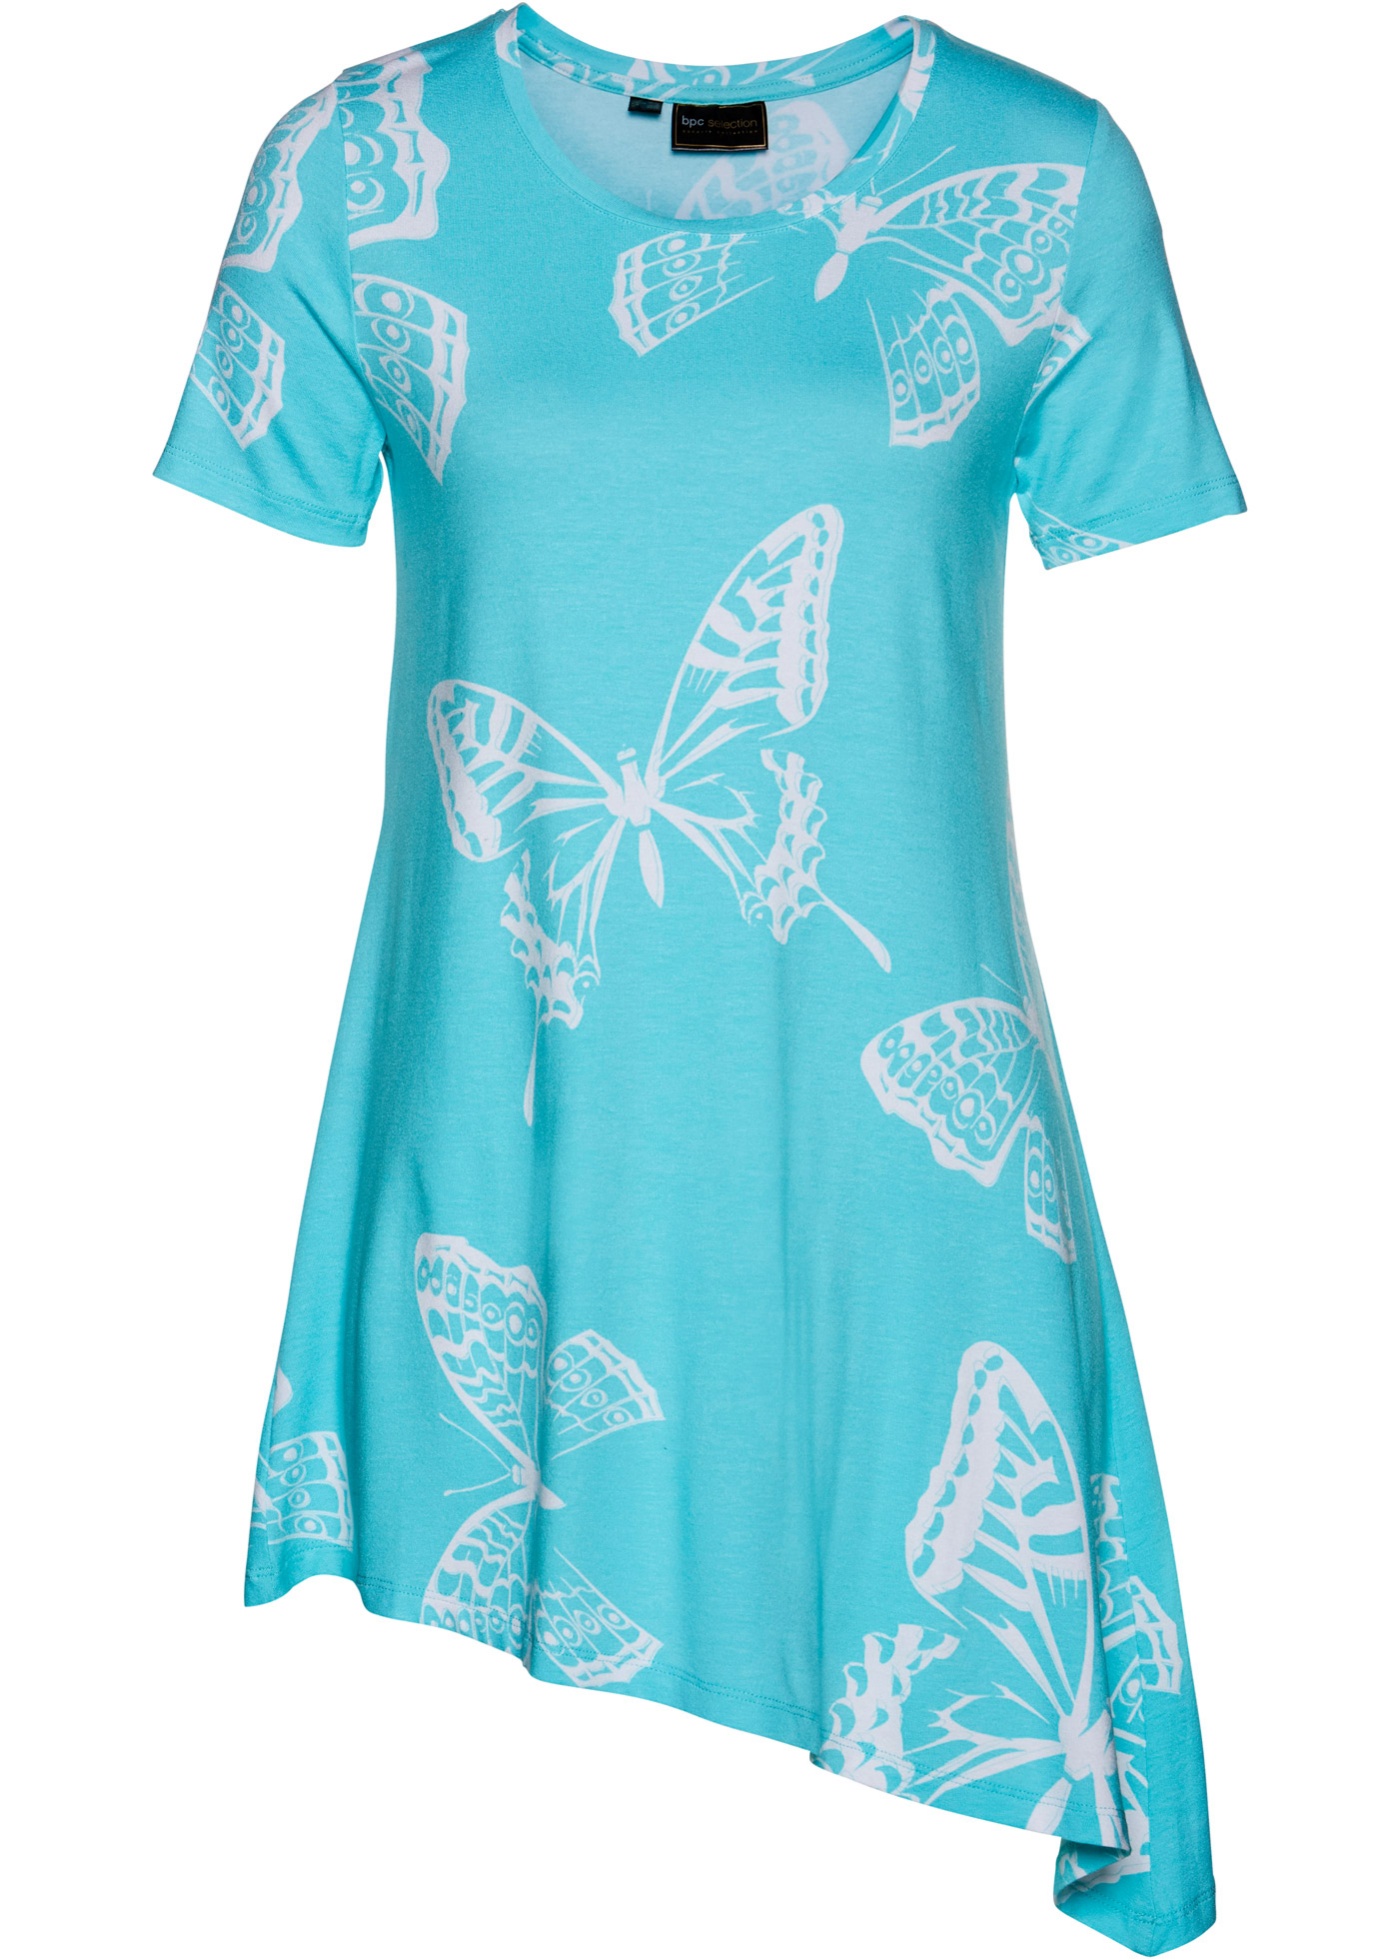 Feminines, asymmetrisches Longshirt mit Schmetterlingsprint (92190795) in aqua/weiß